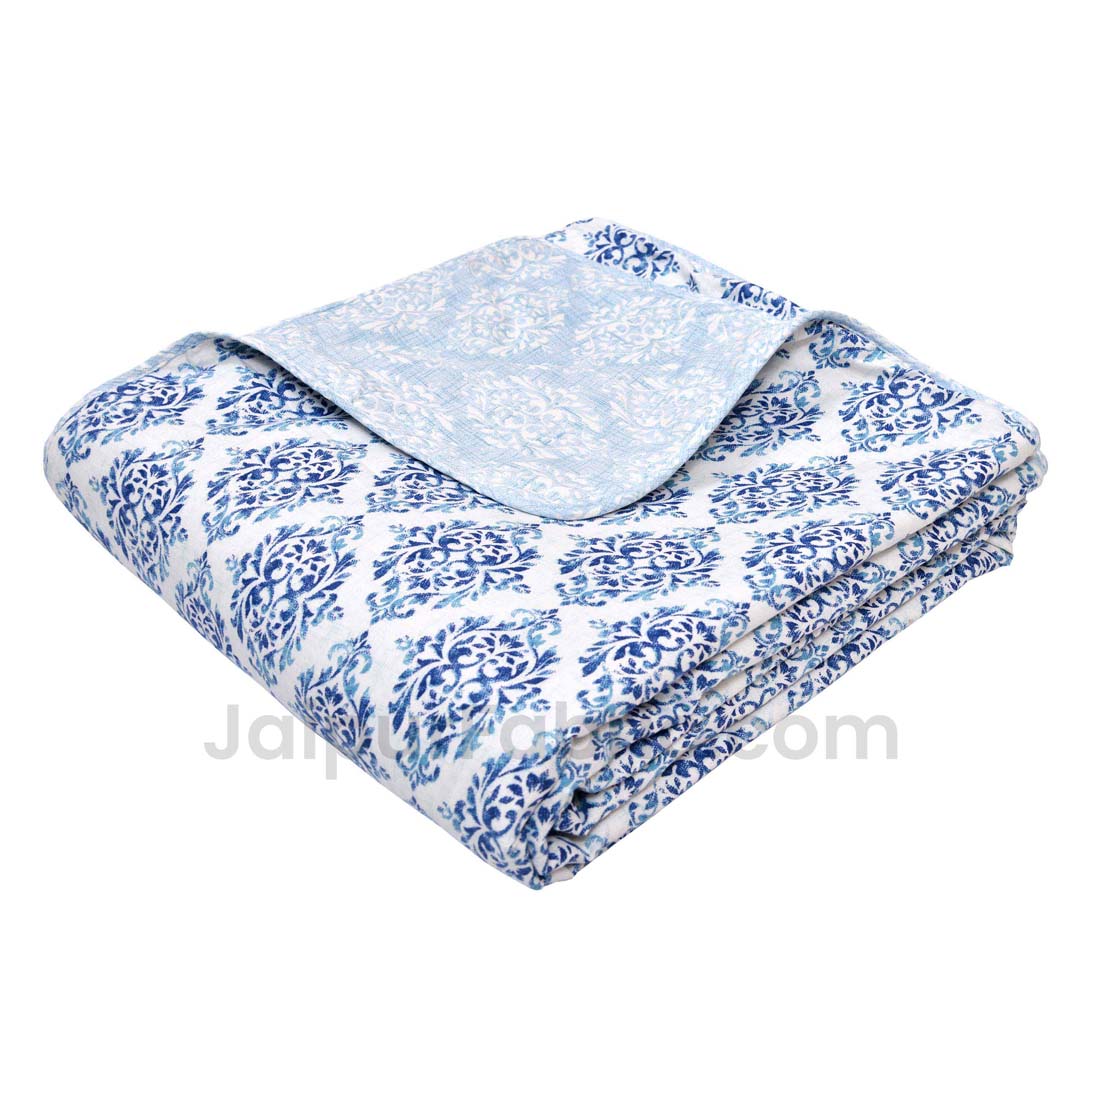 JaipurFabric® Blue Ethnic Double Bed Reversible Dohar